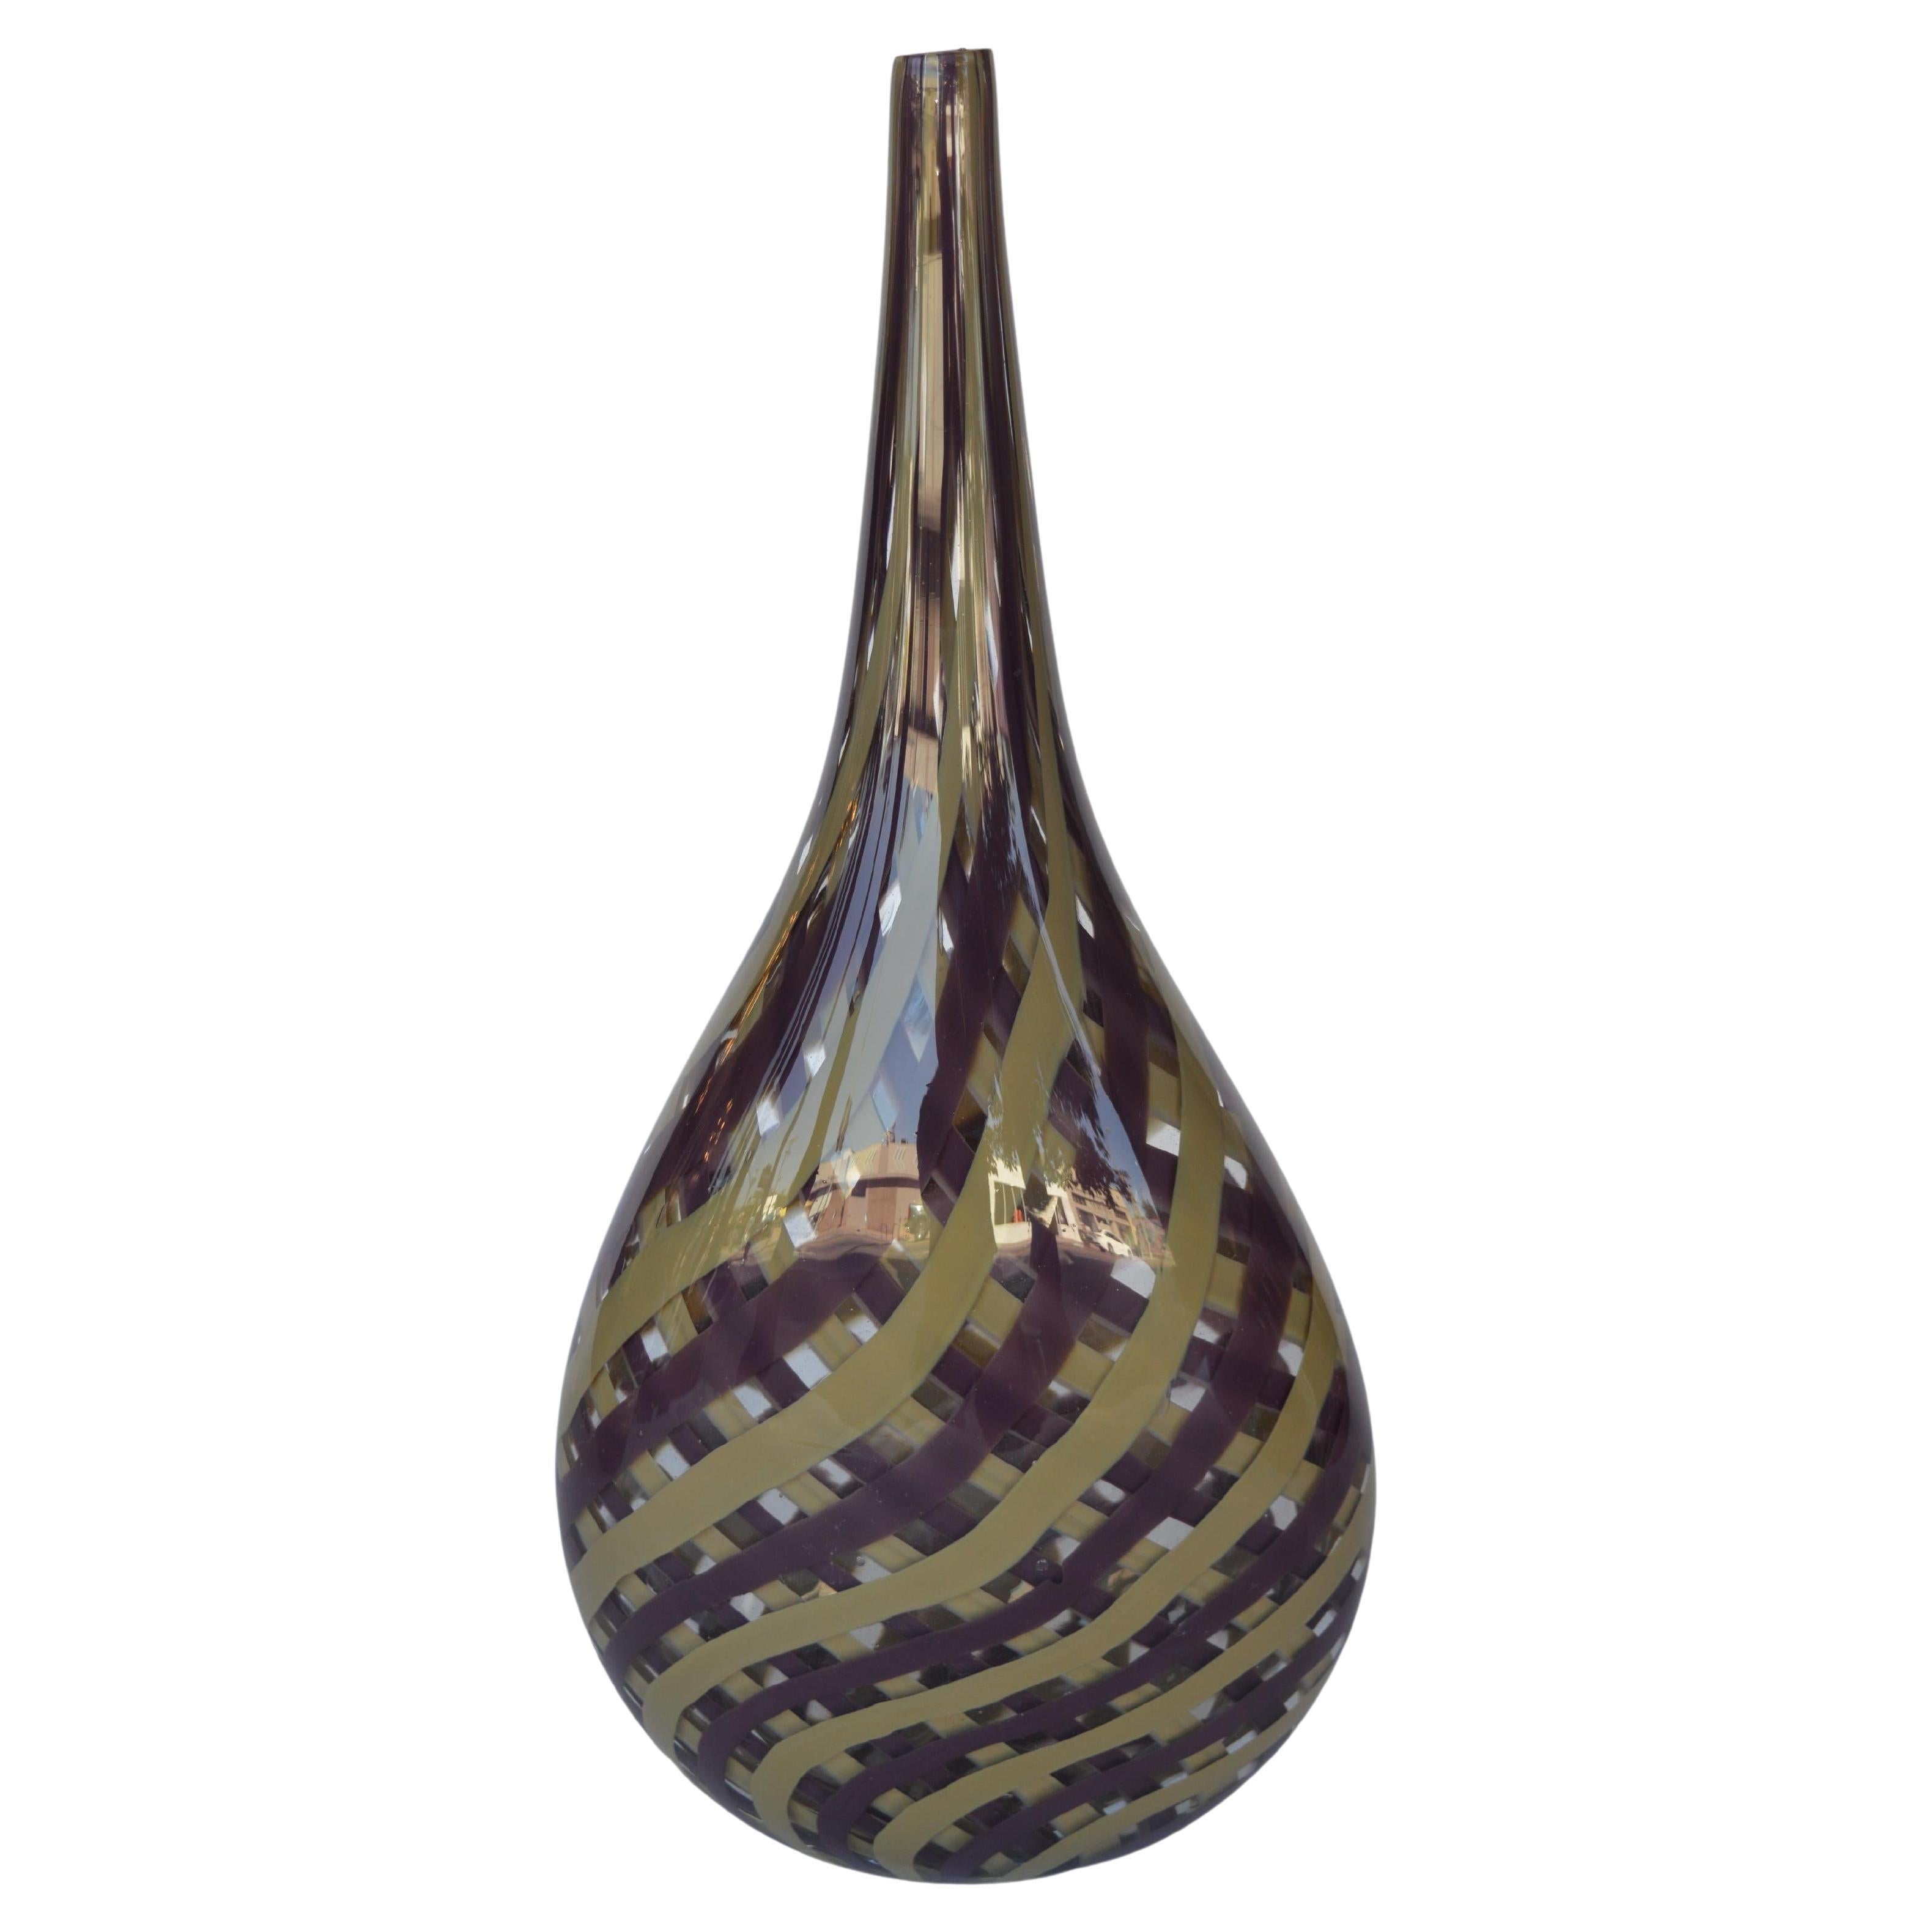 Italienische Vase aus Muranoglas